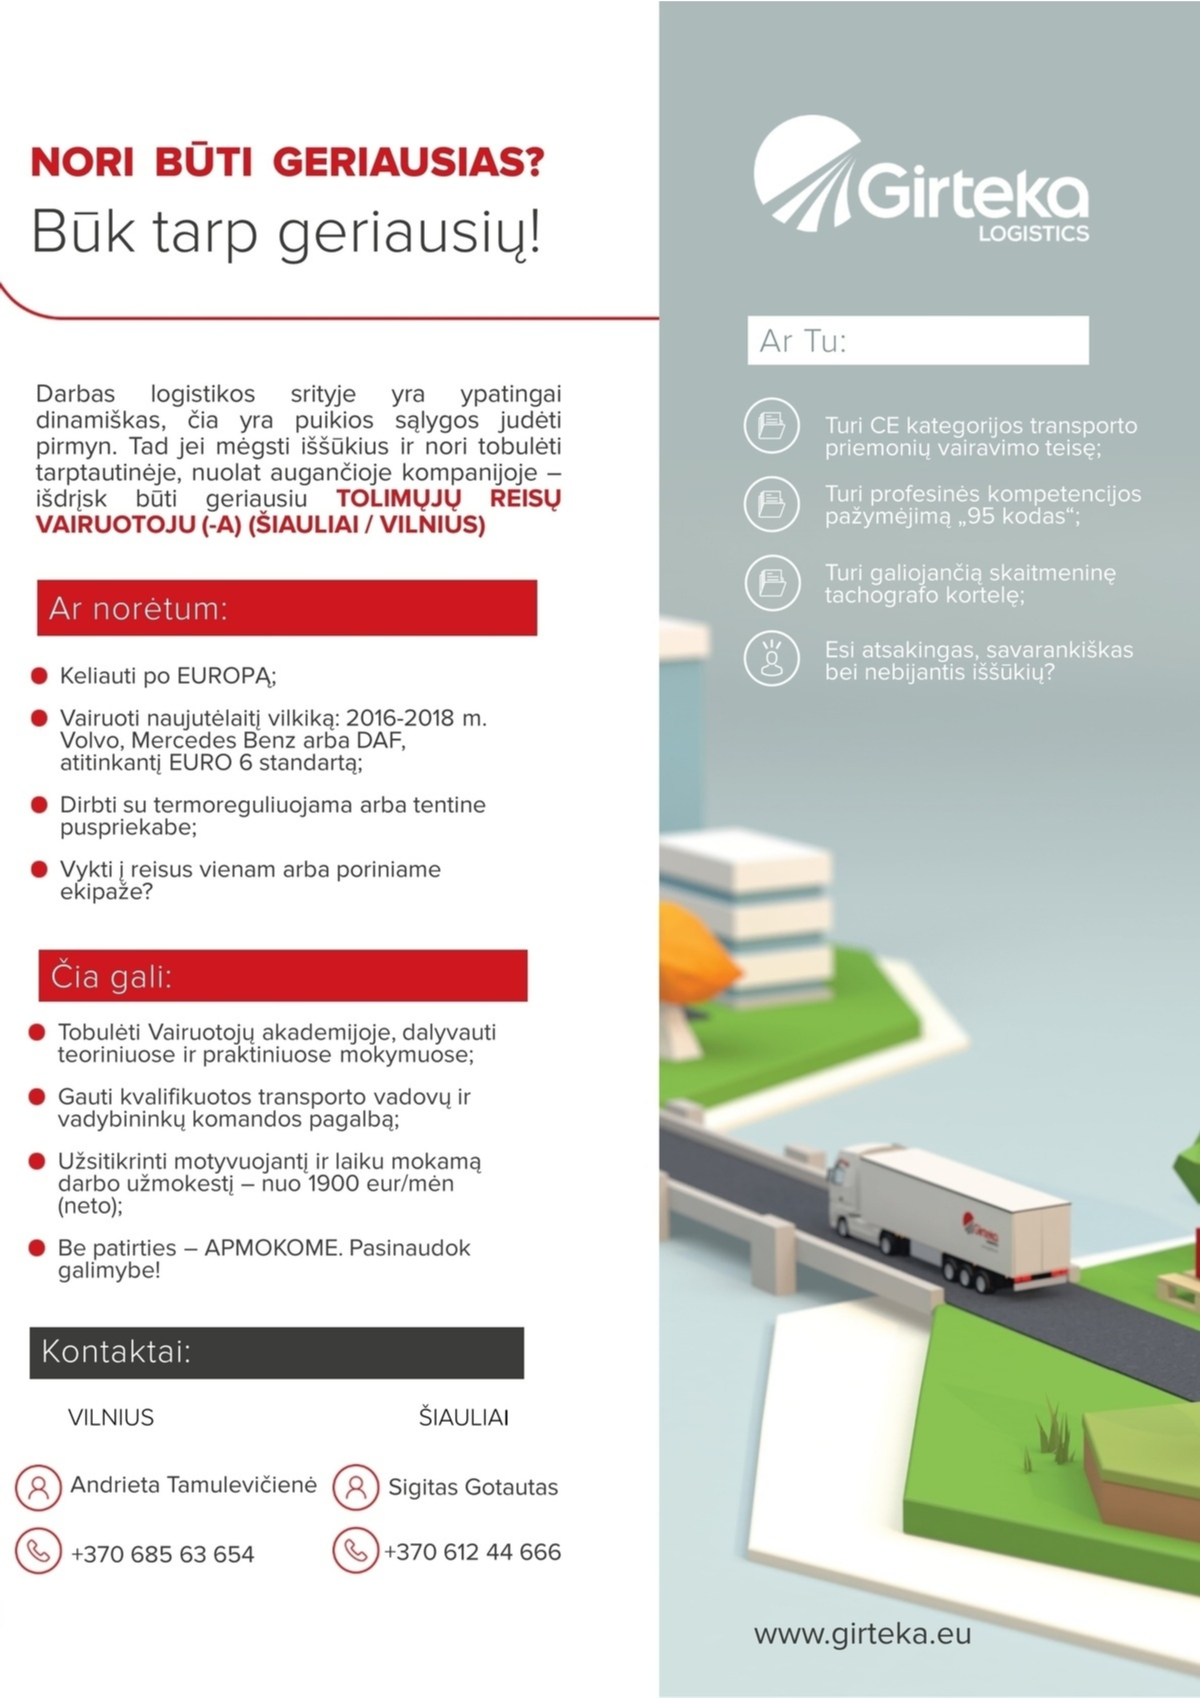 Girteka logistics, UAB Tolimųjų reisų vairuotojas (-a) darbui Europoje